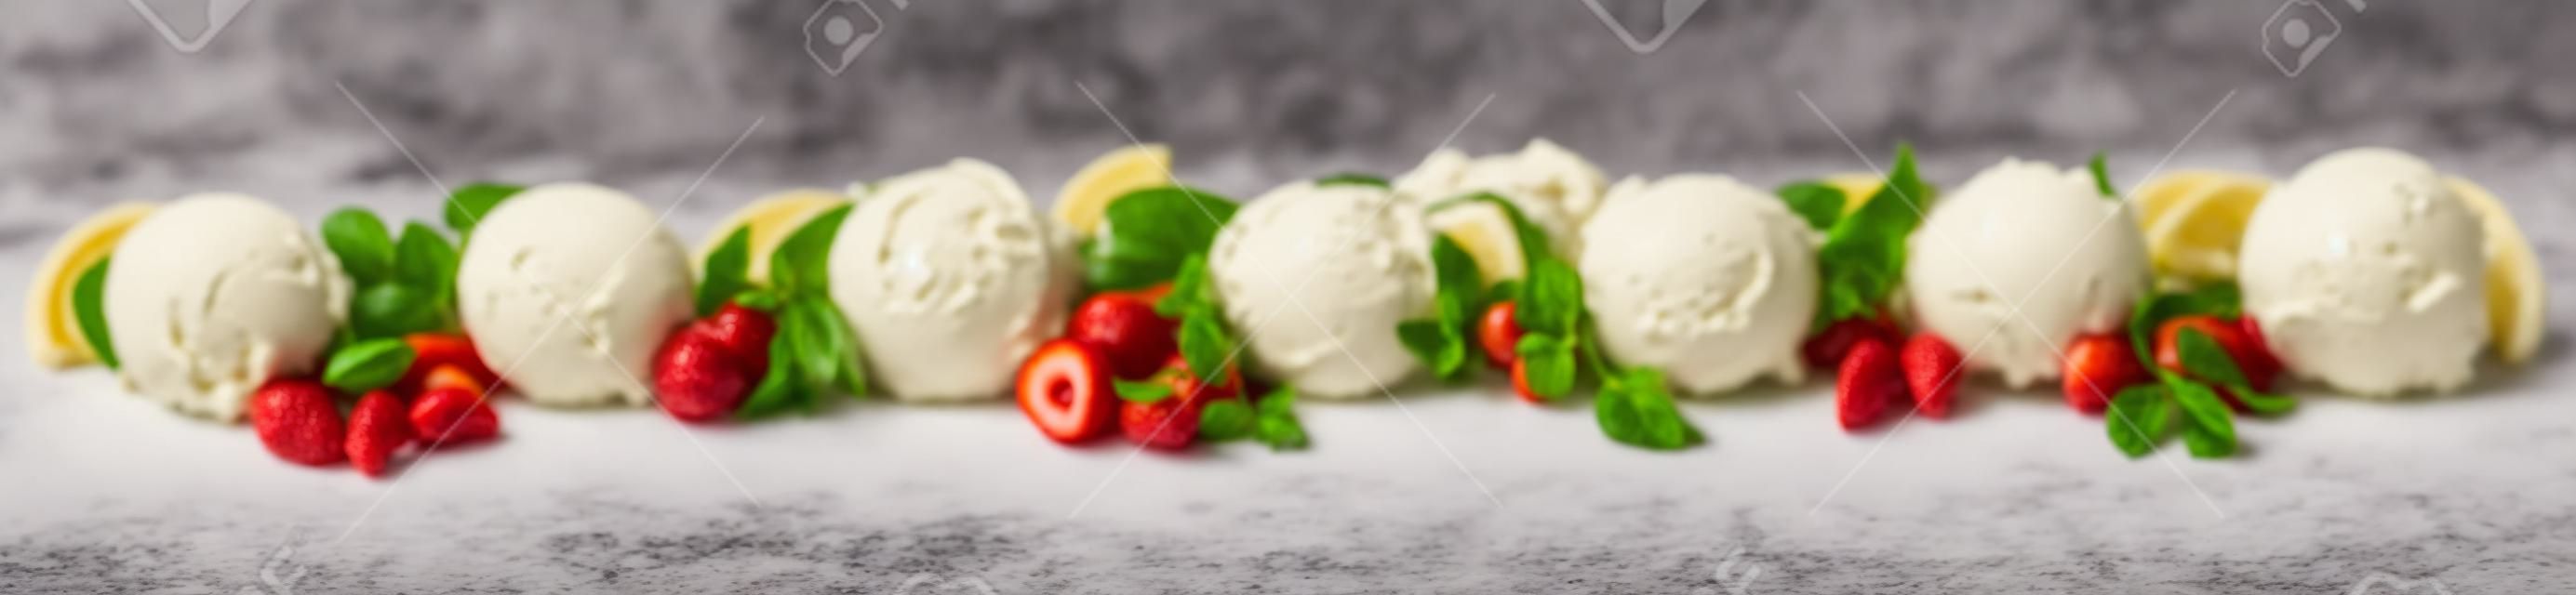 Breites Panoramabanner mit einer Vielzahl italienischer Eisdesserts mit verschiedenen Fruchtaromen, Vanille, Schokolade und Mandeln, die als Reihe von Kugeln mit frischen Zutaten auf Weiß angezeigt werden